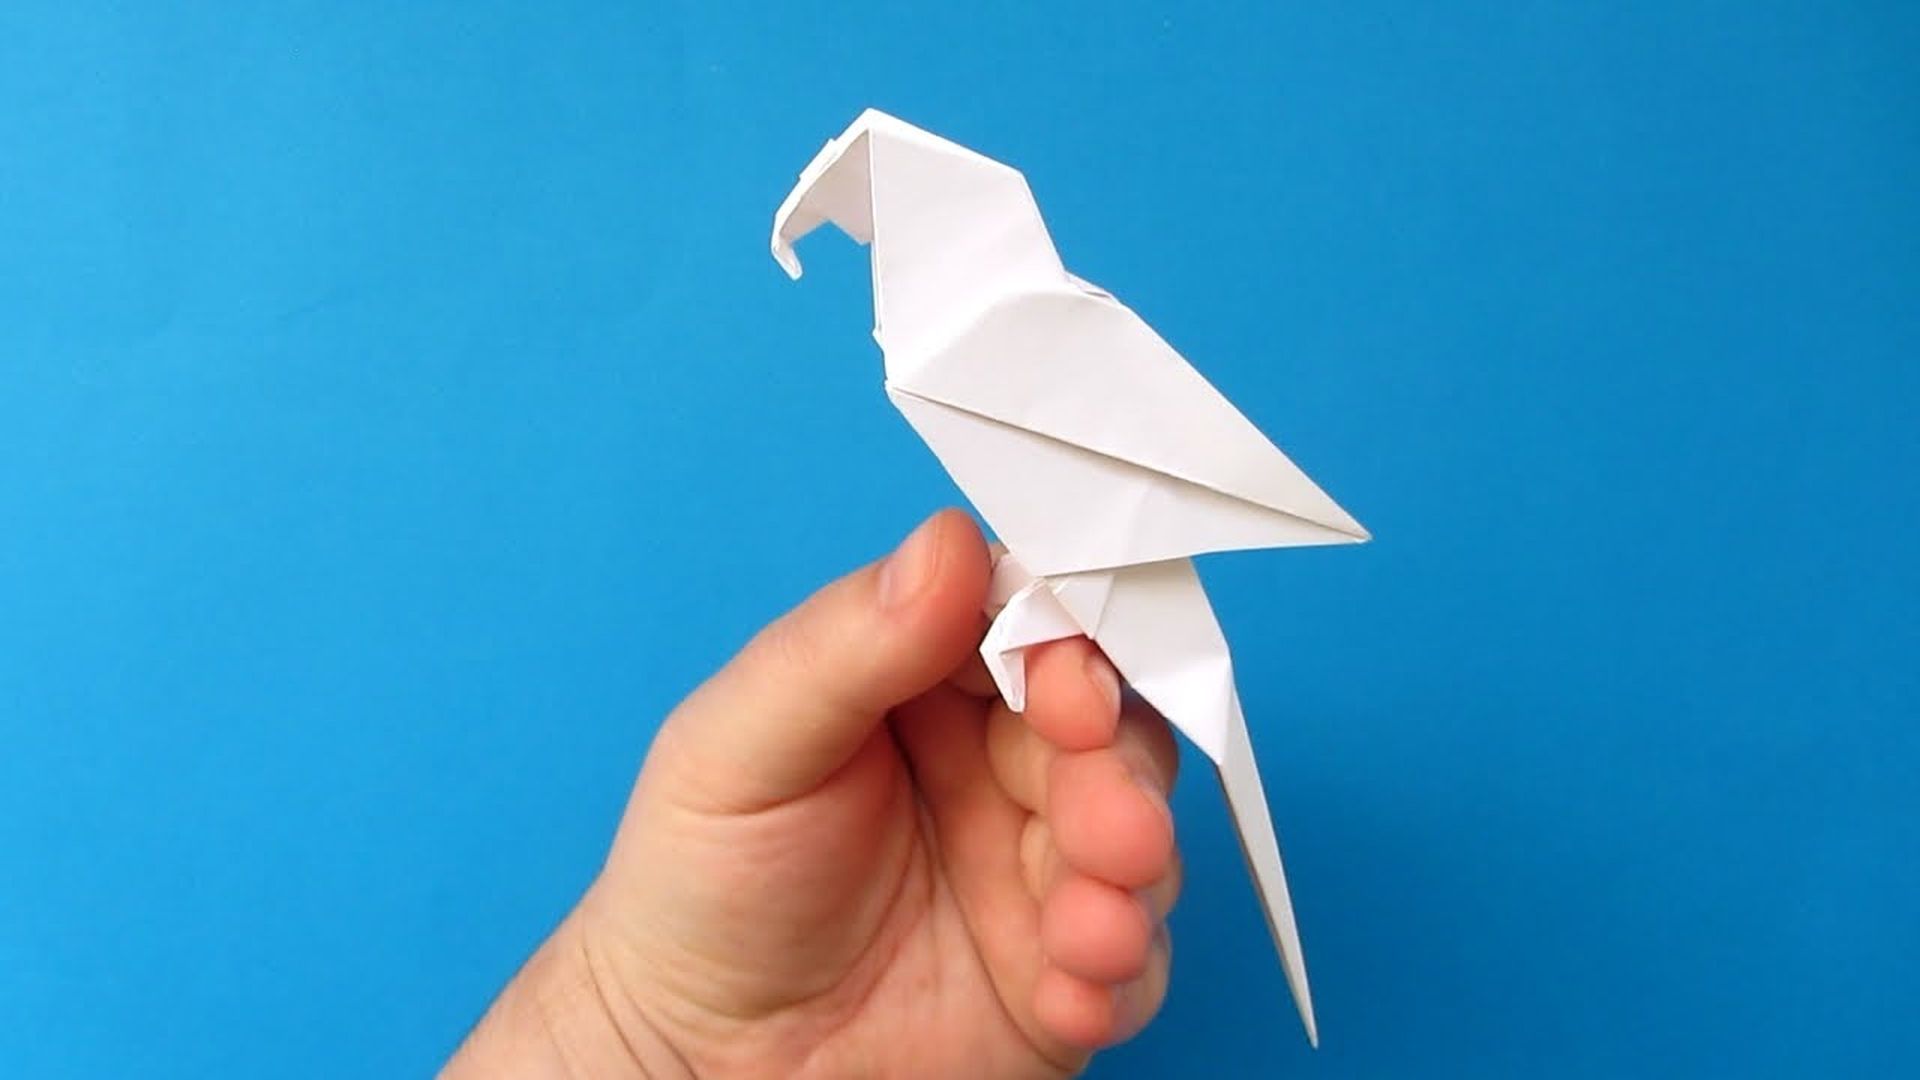 Модульное оригами попугай